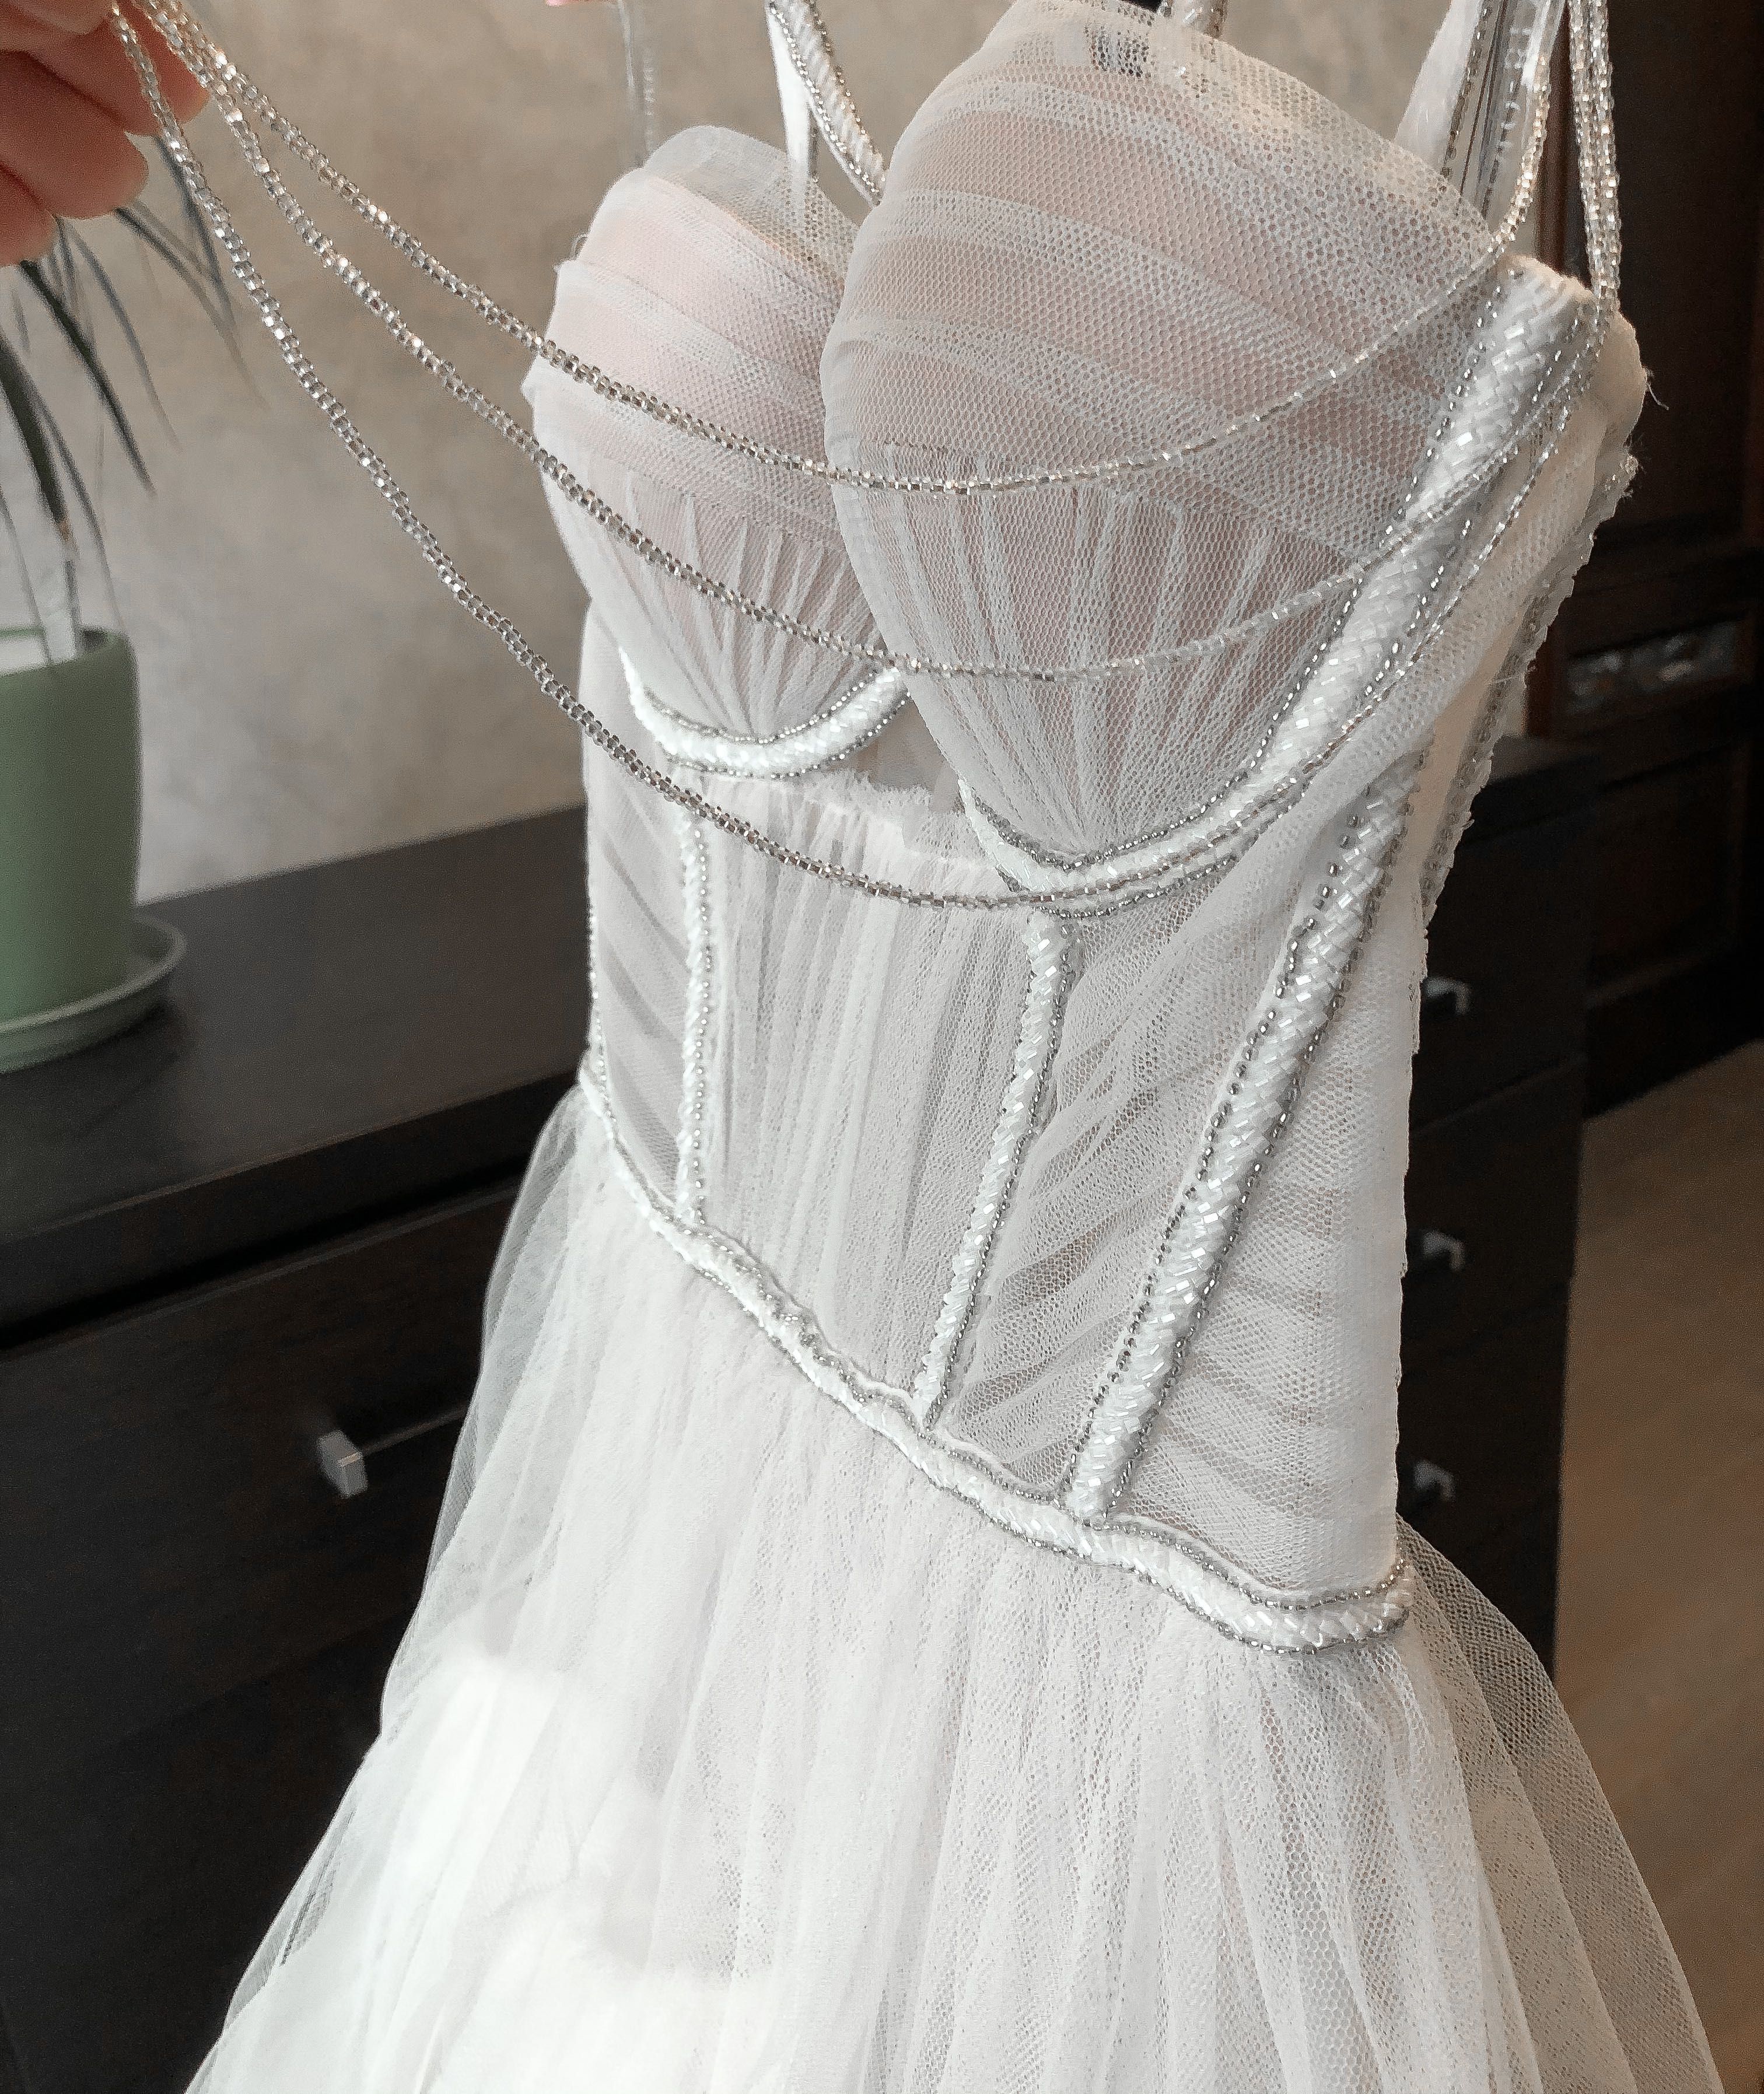 Suknia ślubna Idealna! Lekka, wygodna, oryginalna, marki Blammo Biamo